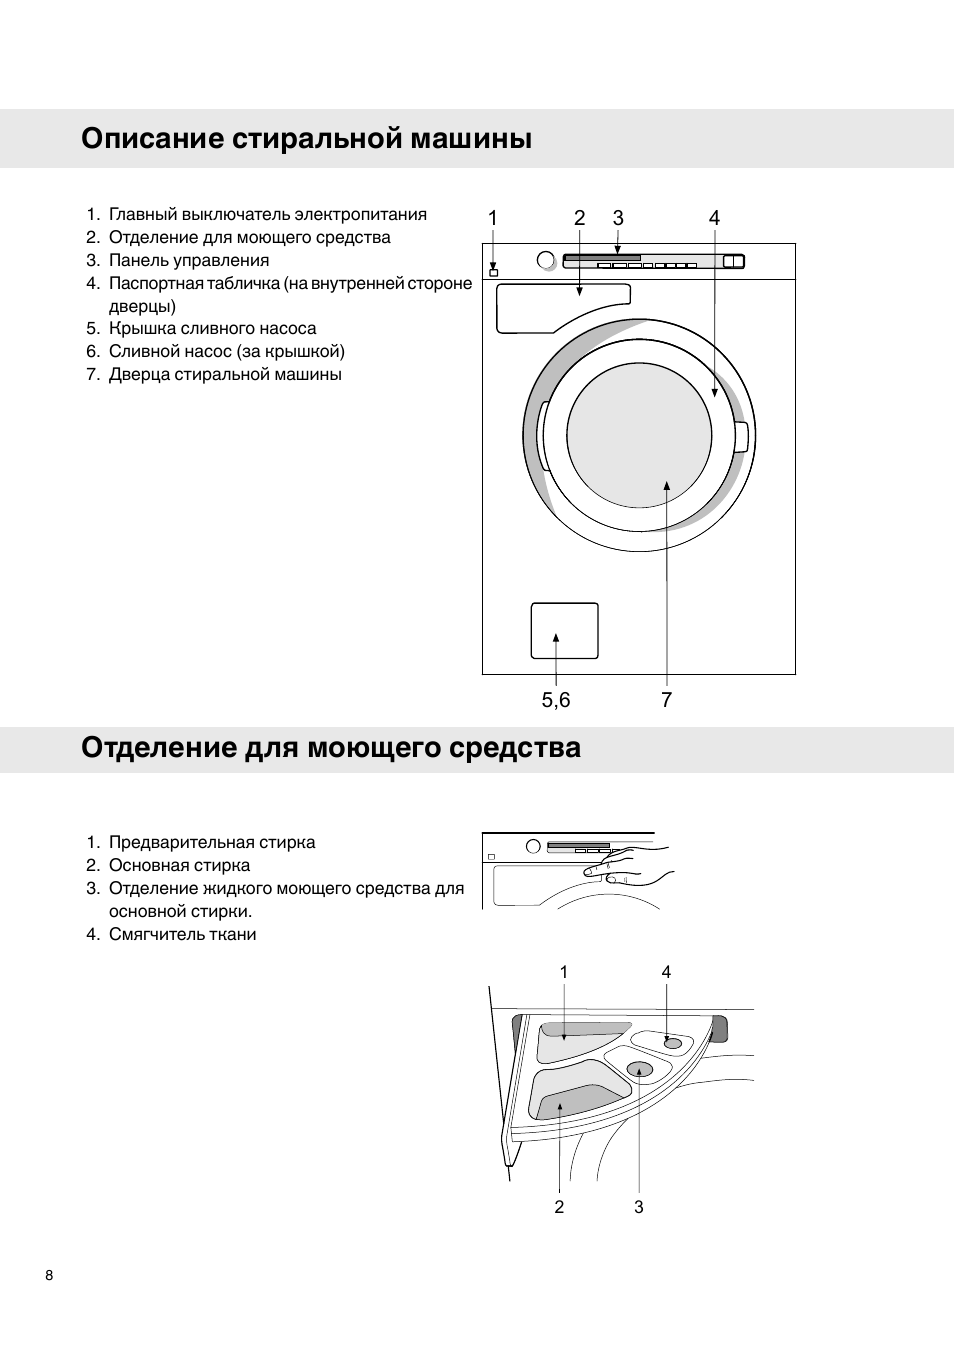 Описание стиральной машинки